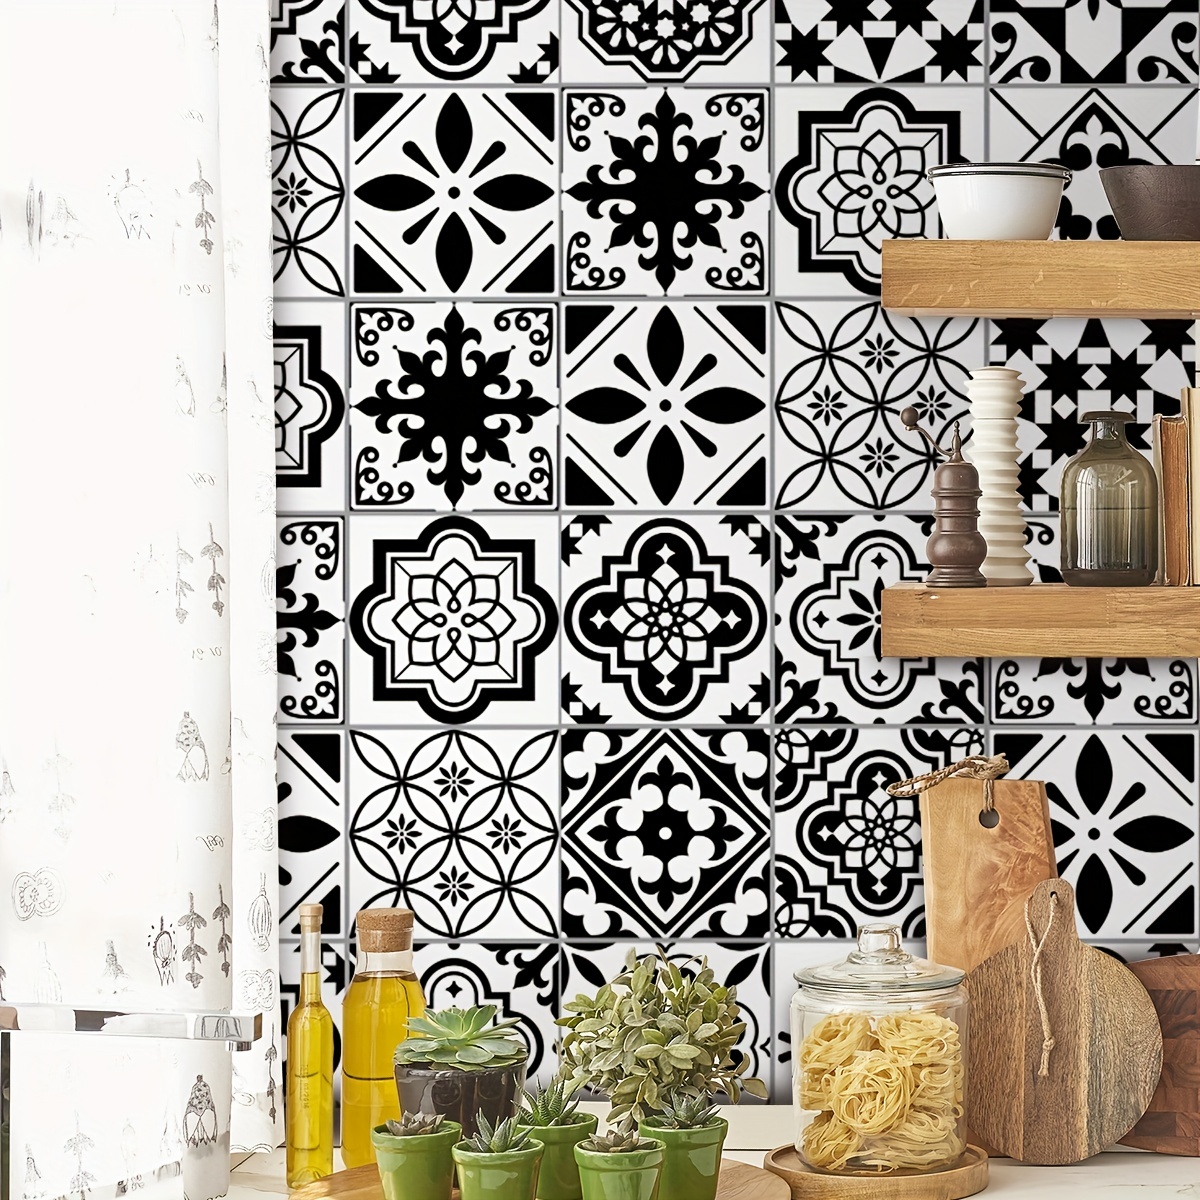 Kitchen Wall Sticker Tiles Waterproof  Black Kitchen Wall Tiles Sticker -  10pcs - Aliexpress